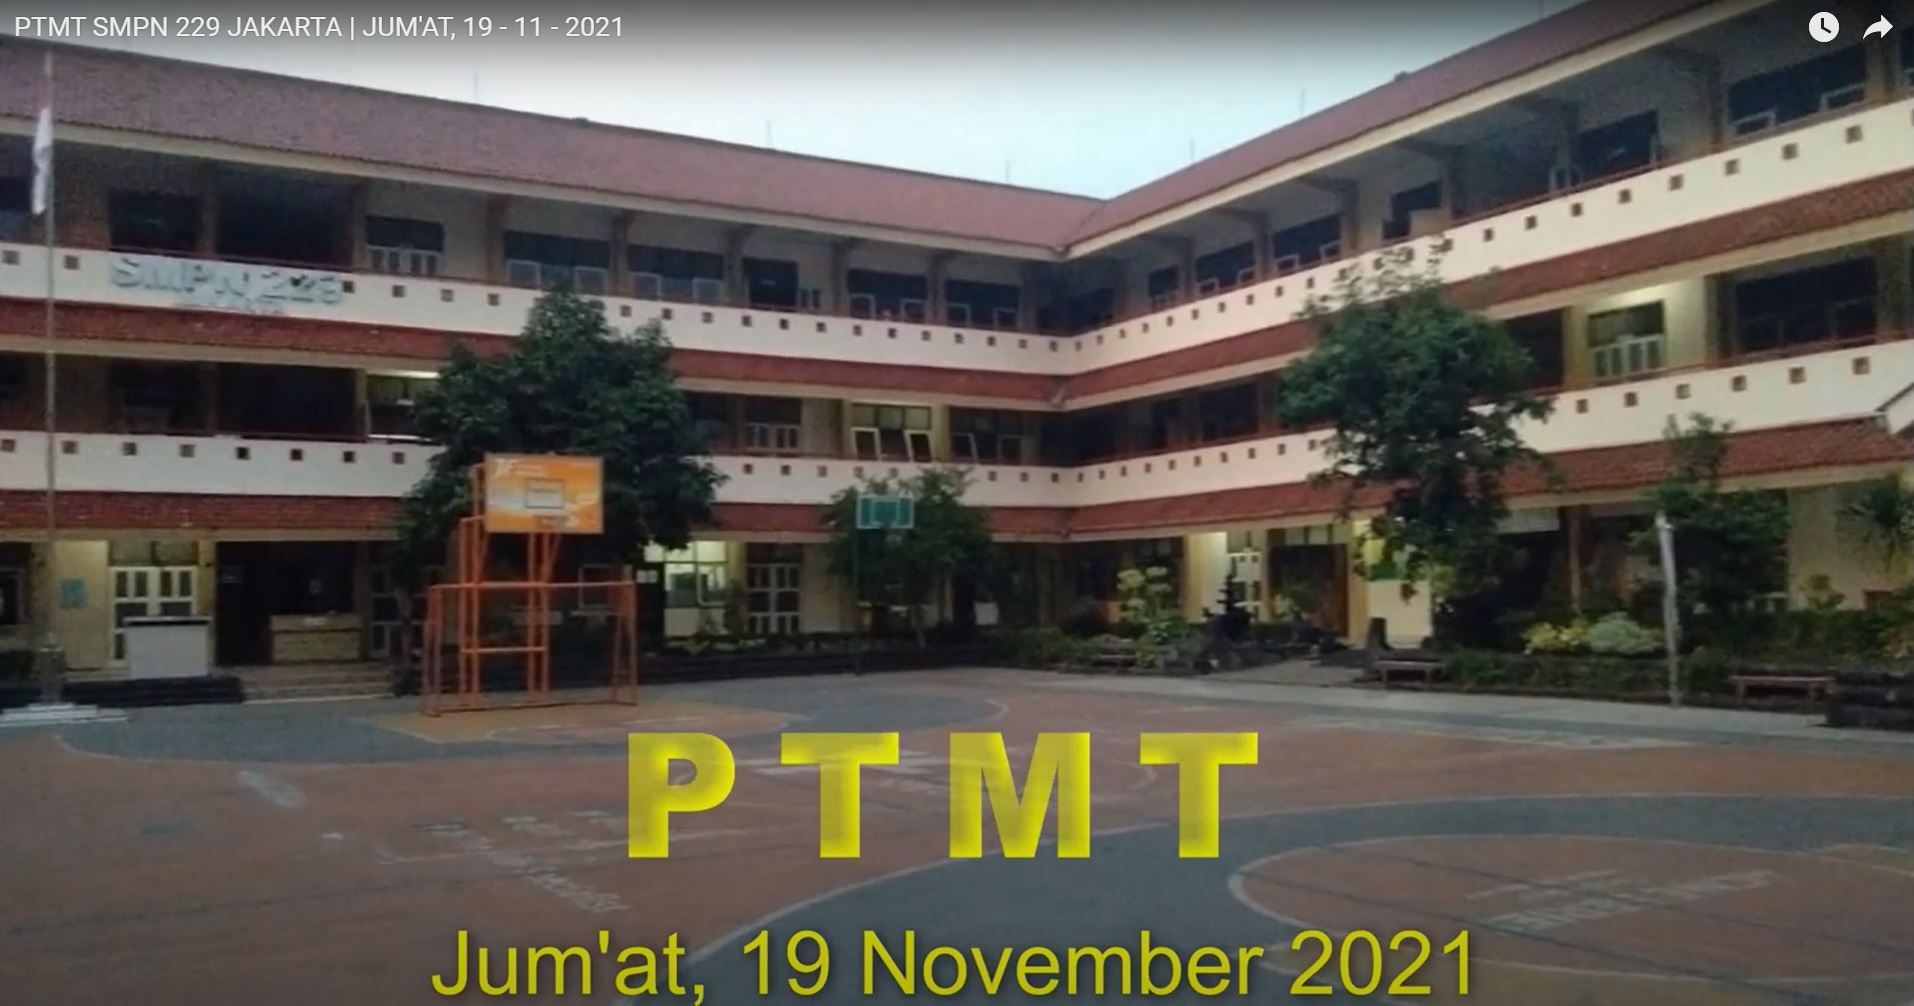 PTMT SMPN 229 - JUMAT, 19 NOVEMBER 2021